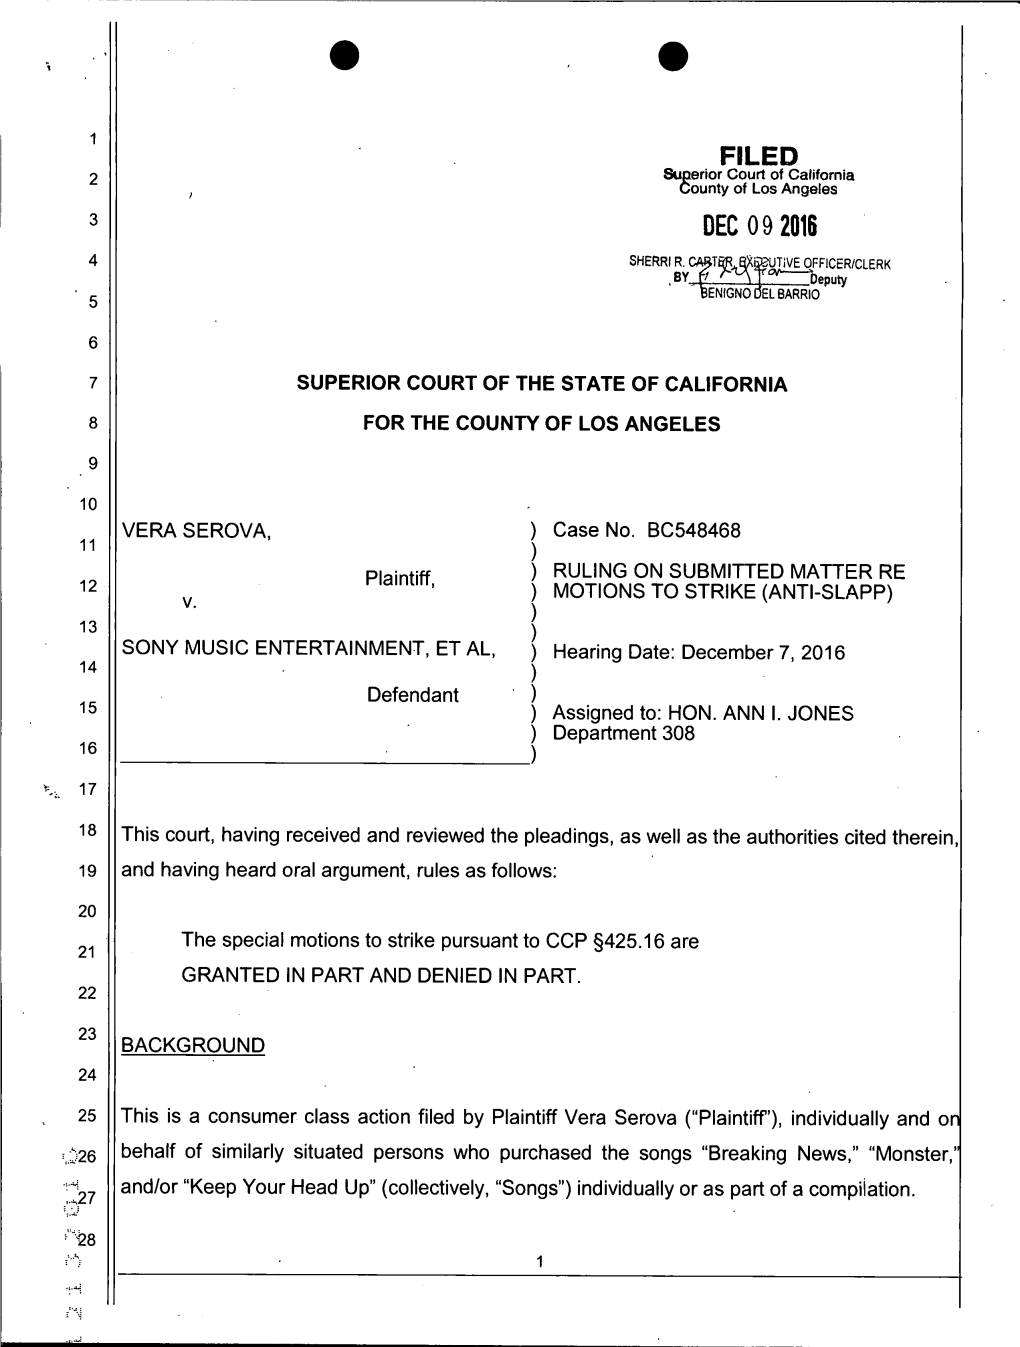 + CA Superior Court Decision